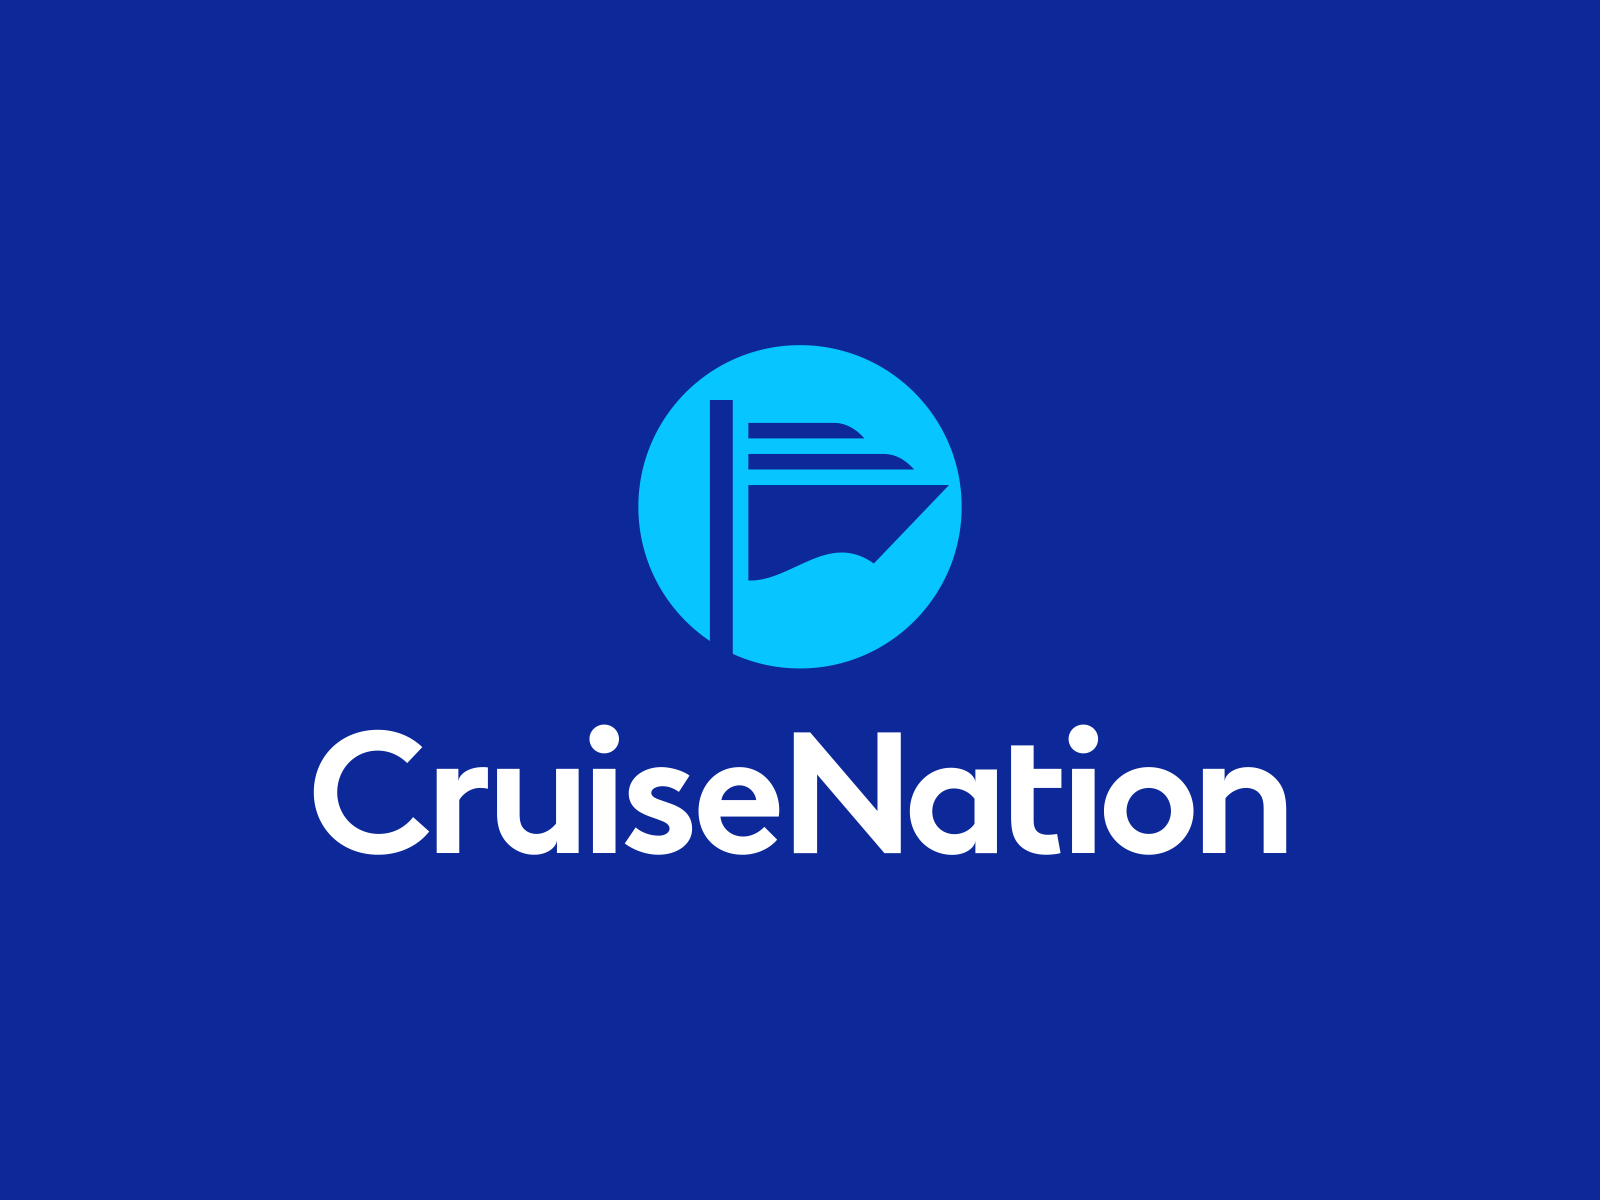 Cruise Nation Logo Design by Dalius Stuoka logo designer on Dribbble